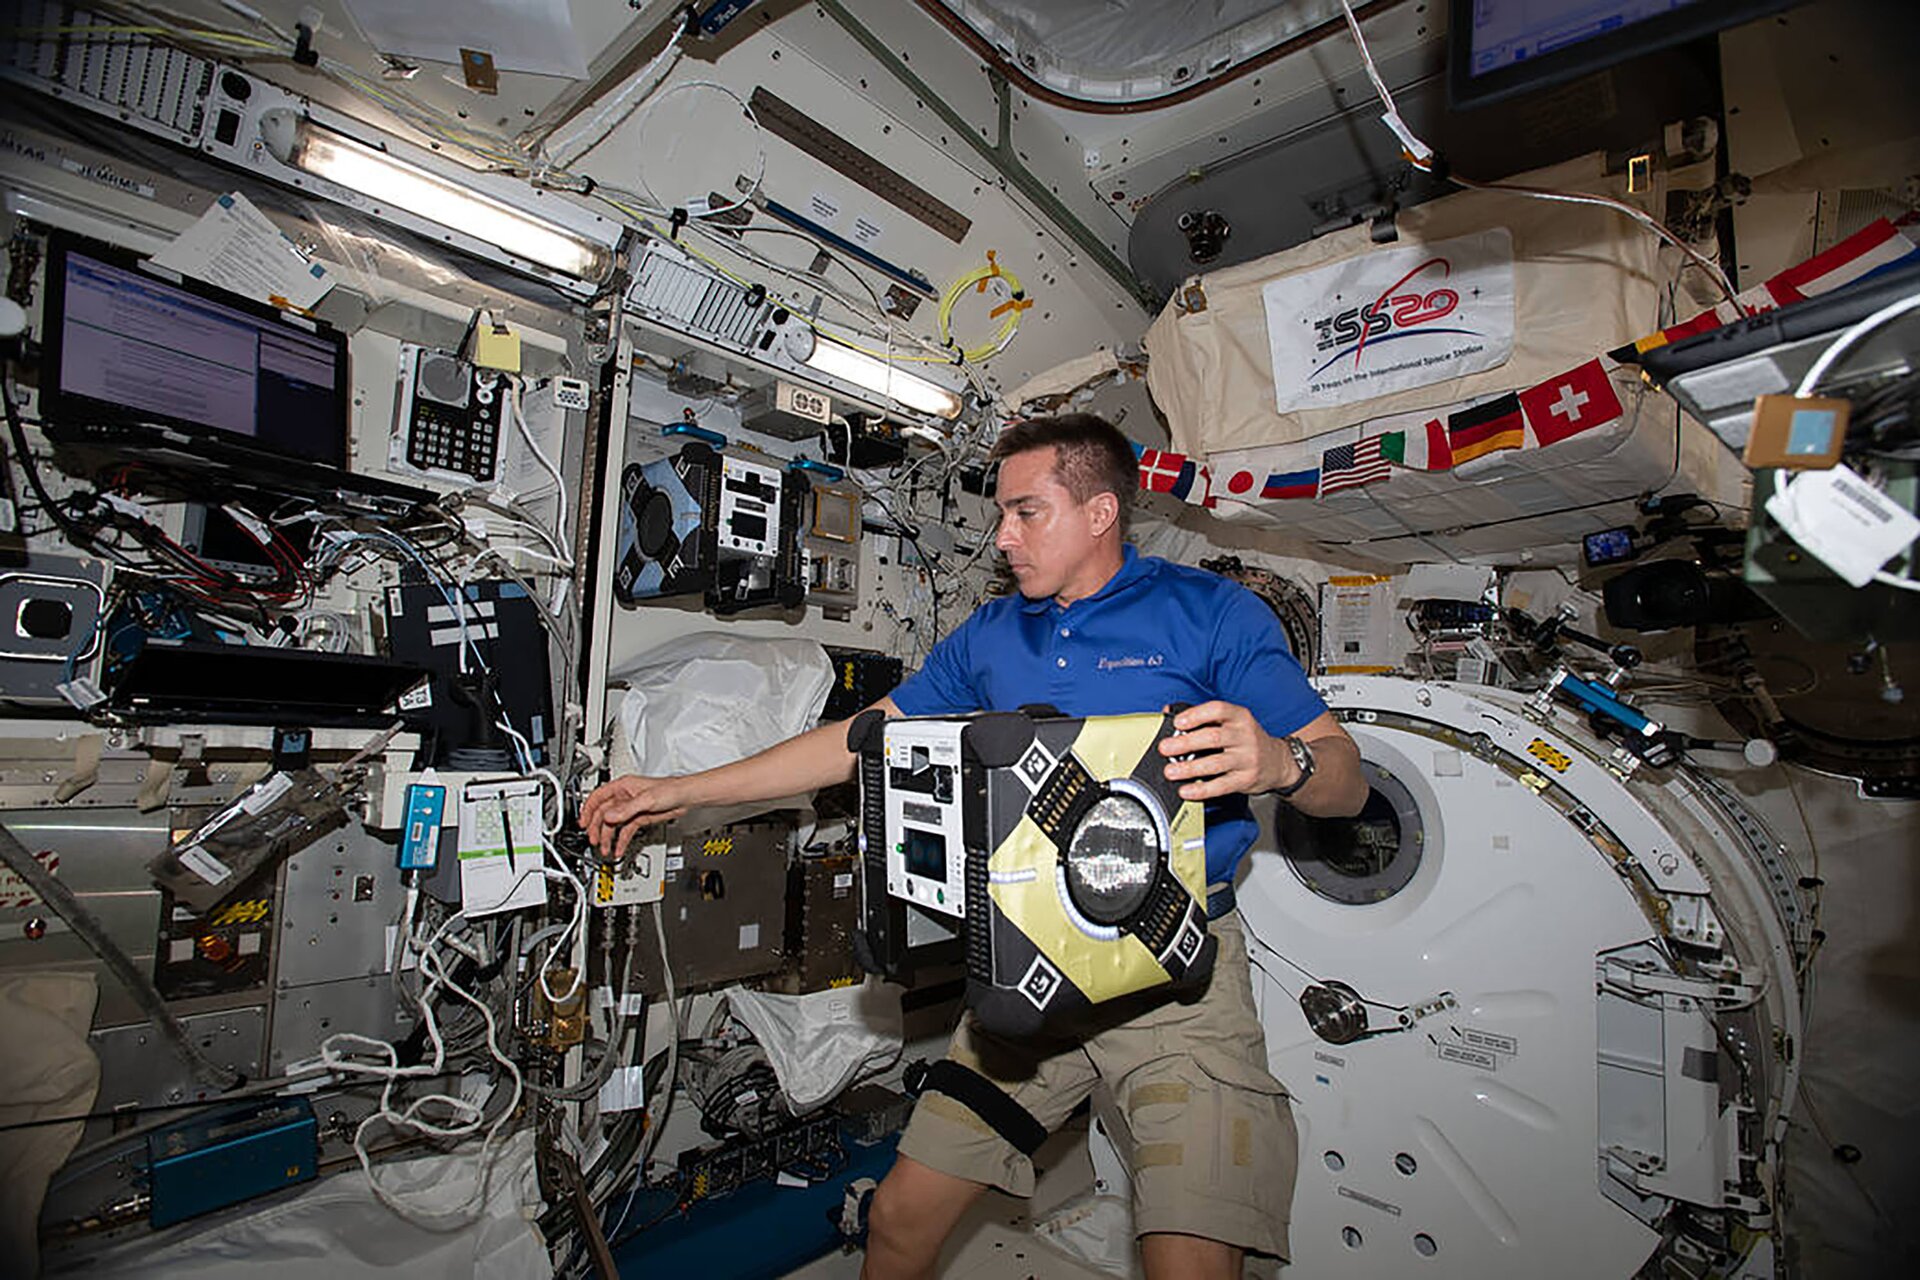 Rys. 2. Zdjęcie przedstawia astronautę w statku kosmicznym znajdującym się na orbicie okołoziemskiej. Astronauta unosi jedną ręką duże urządzenie.